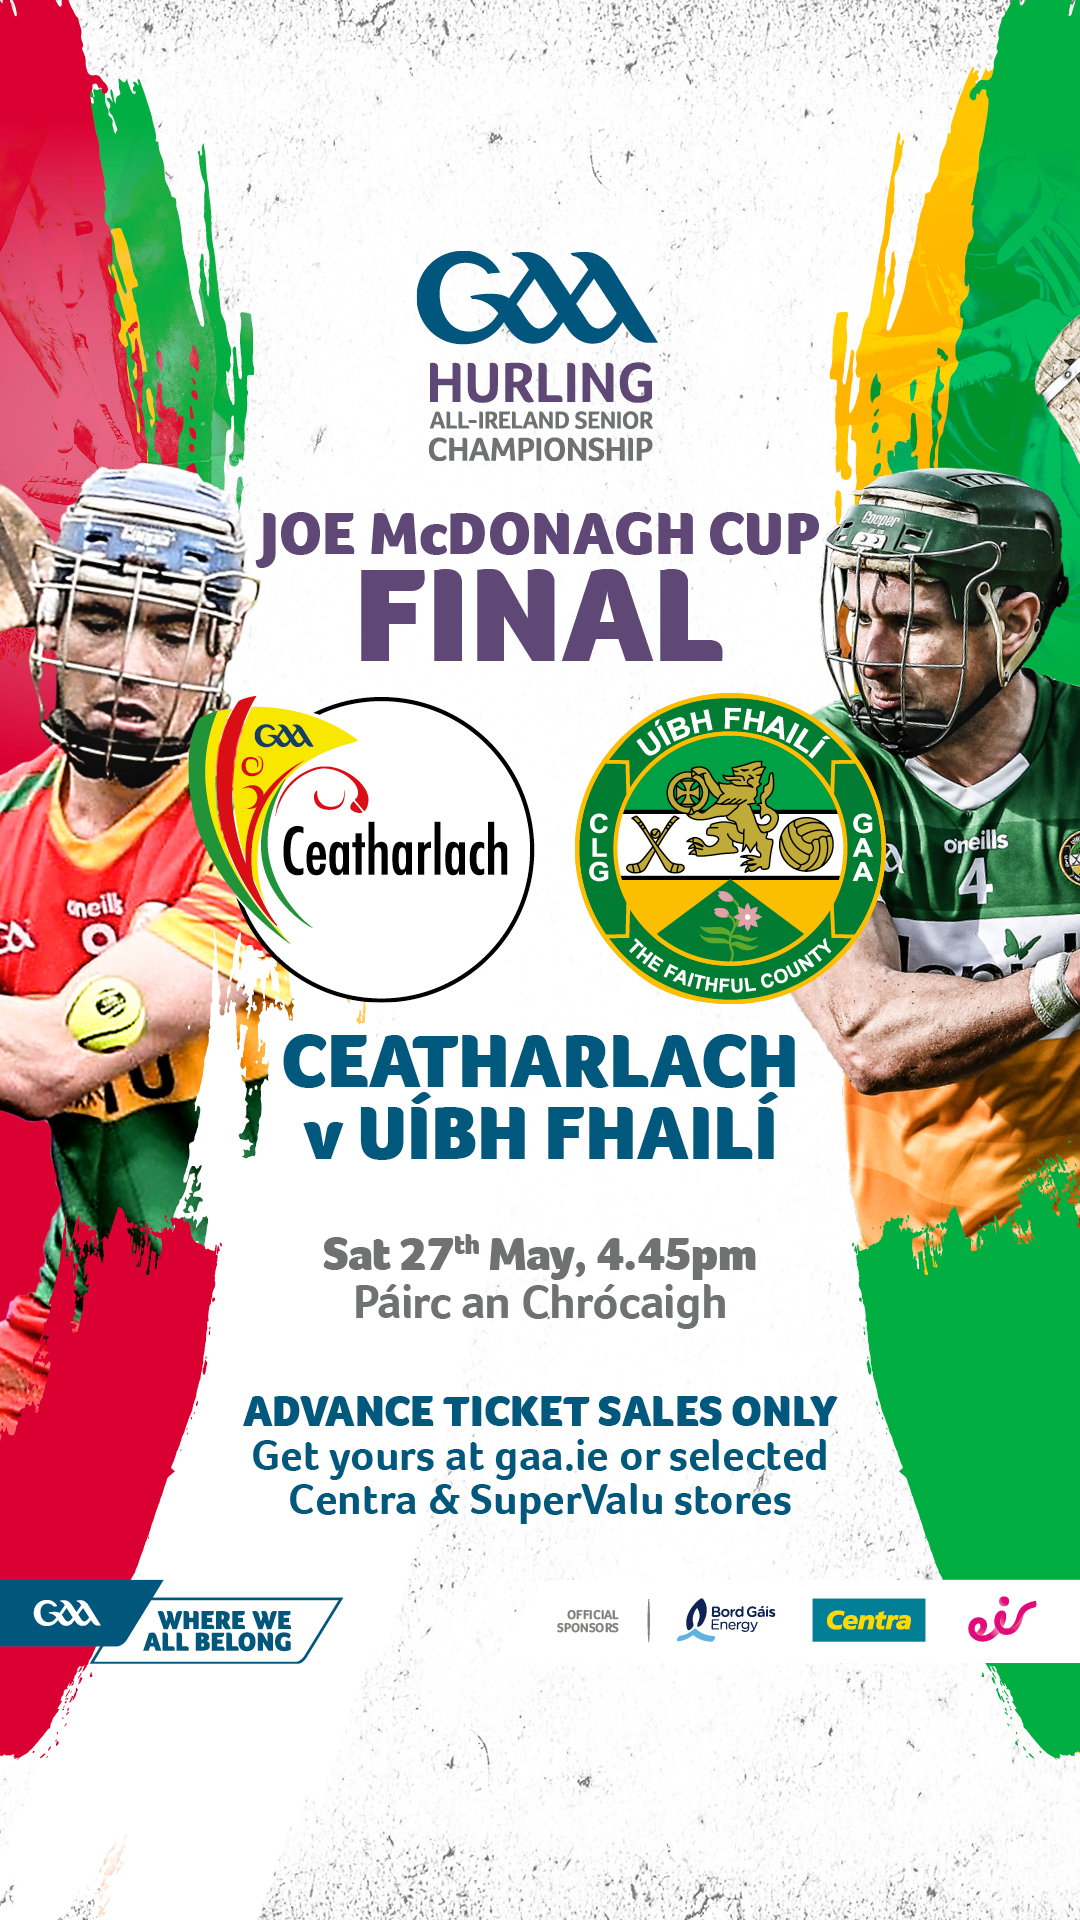 Joe McDonagh Cup Final